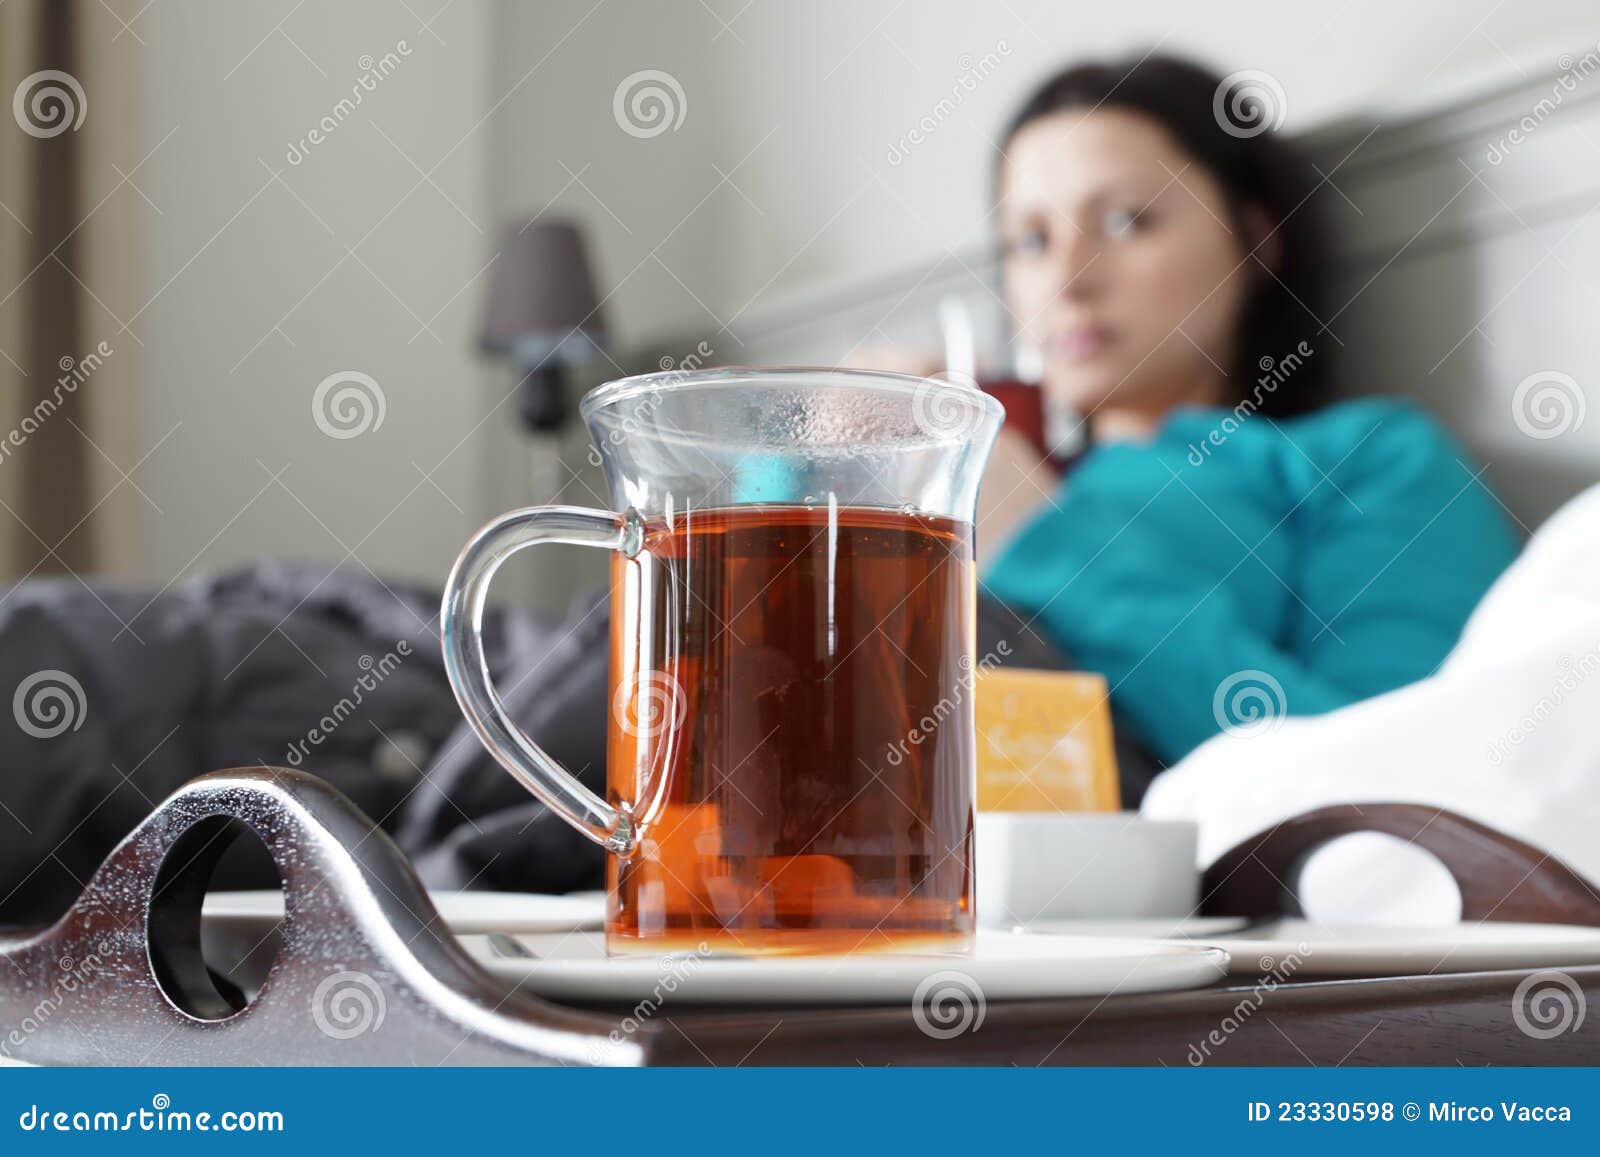 При температуре пьют горячий чай. Что пить при ангине чай. Человек пьет горячий чай. Горячее питье при ангине. Горячий чай для больнггг.